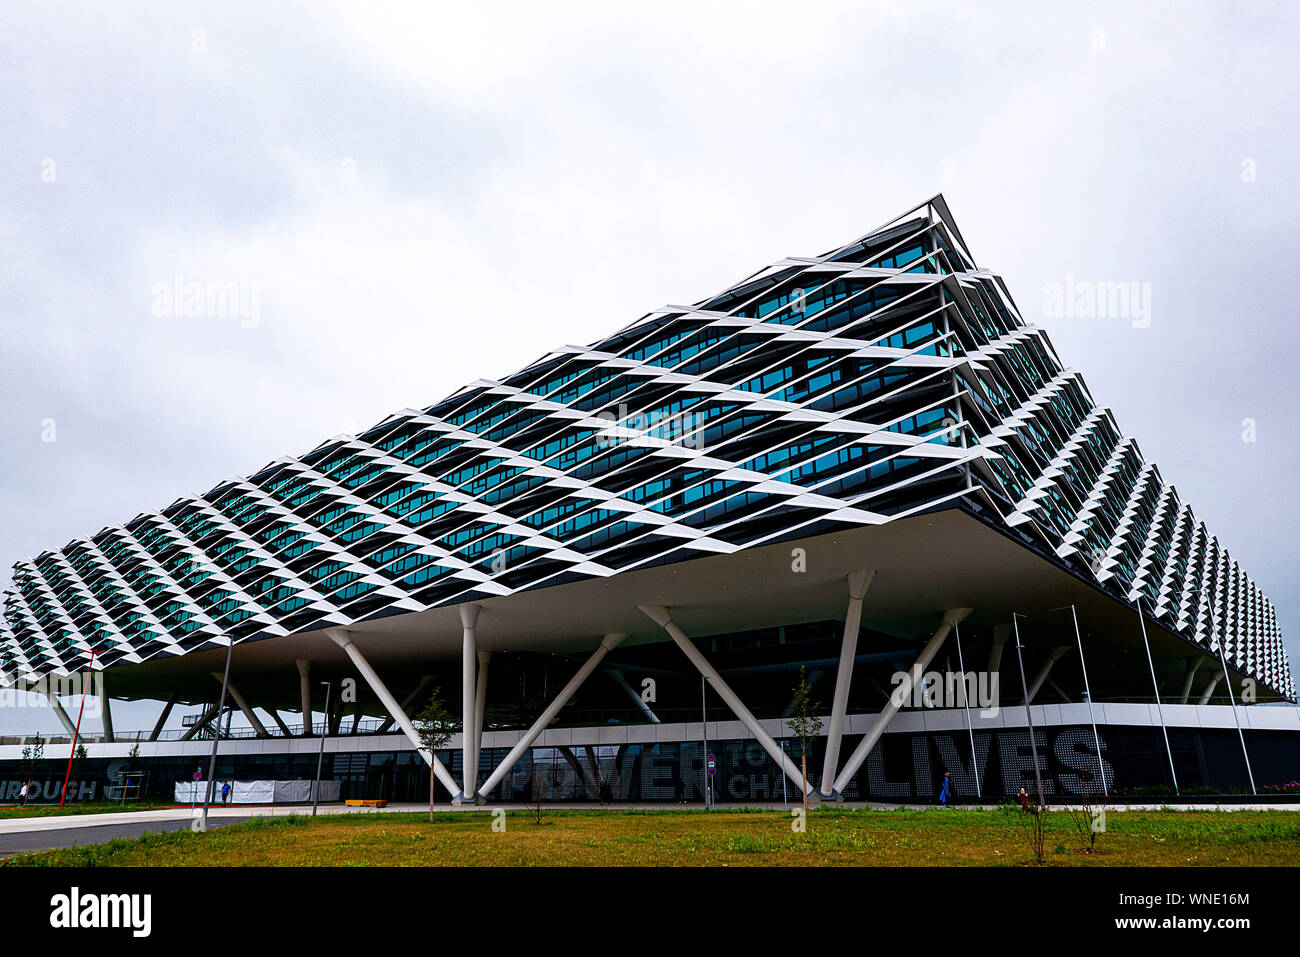 Herzogenaurach, Alemania. El 29 de julio, 2019. Adidas Arena, adidas AG  edificio administrativo con reminiscencias de un estadio de fútbol, estadio  de fútbol, tiene un tamaño de 52.000 metros cuadrados y tiene